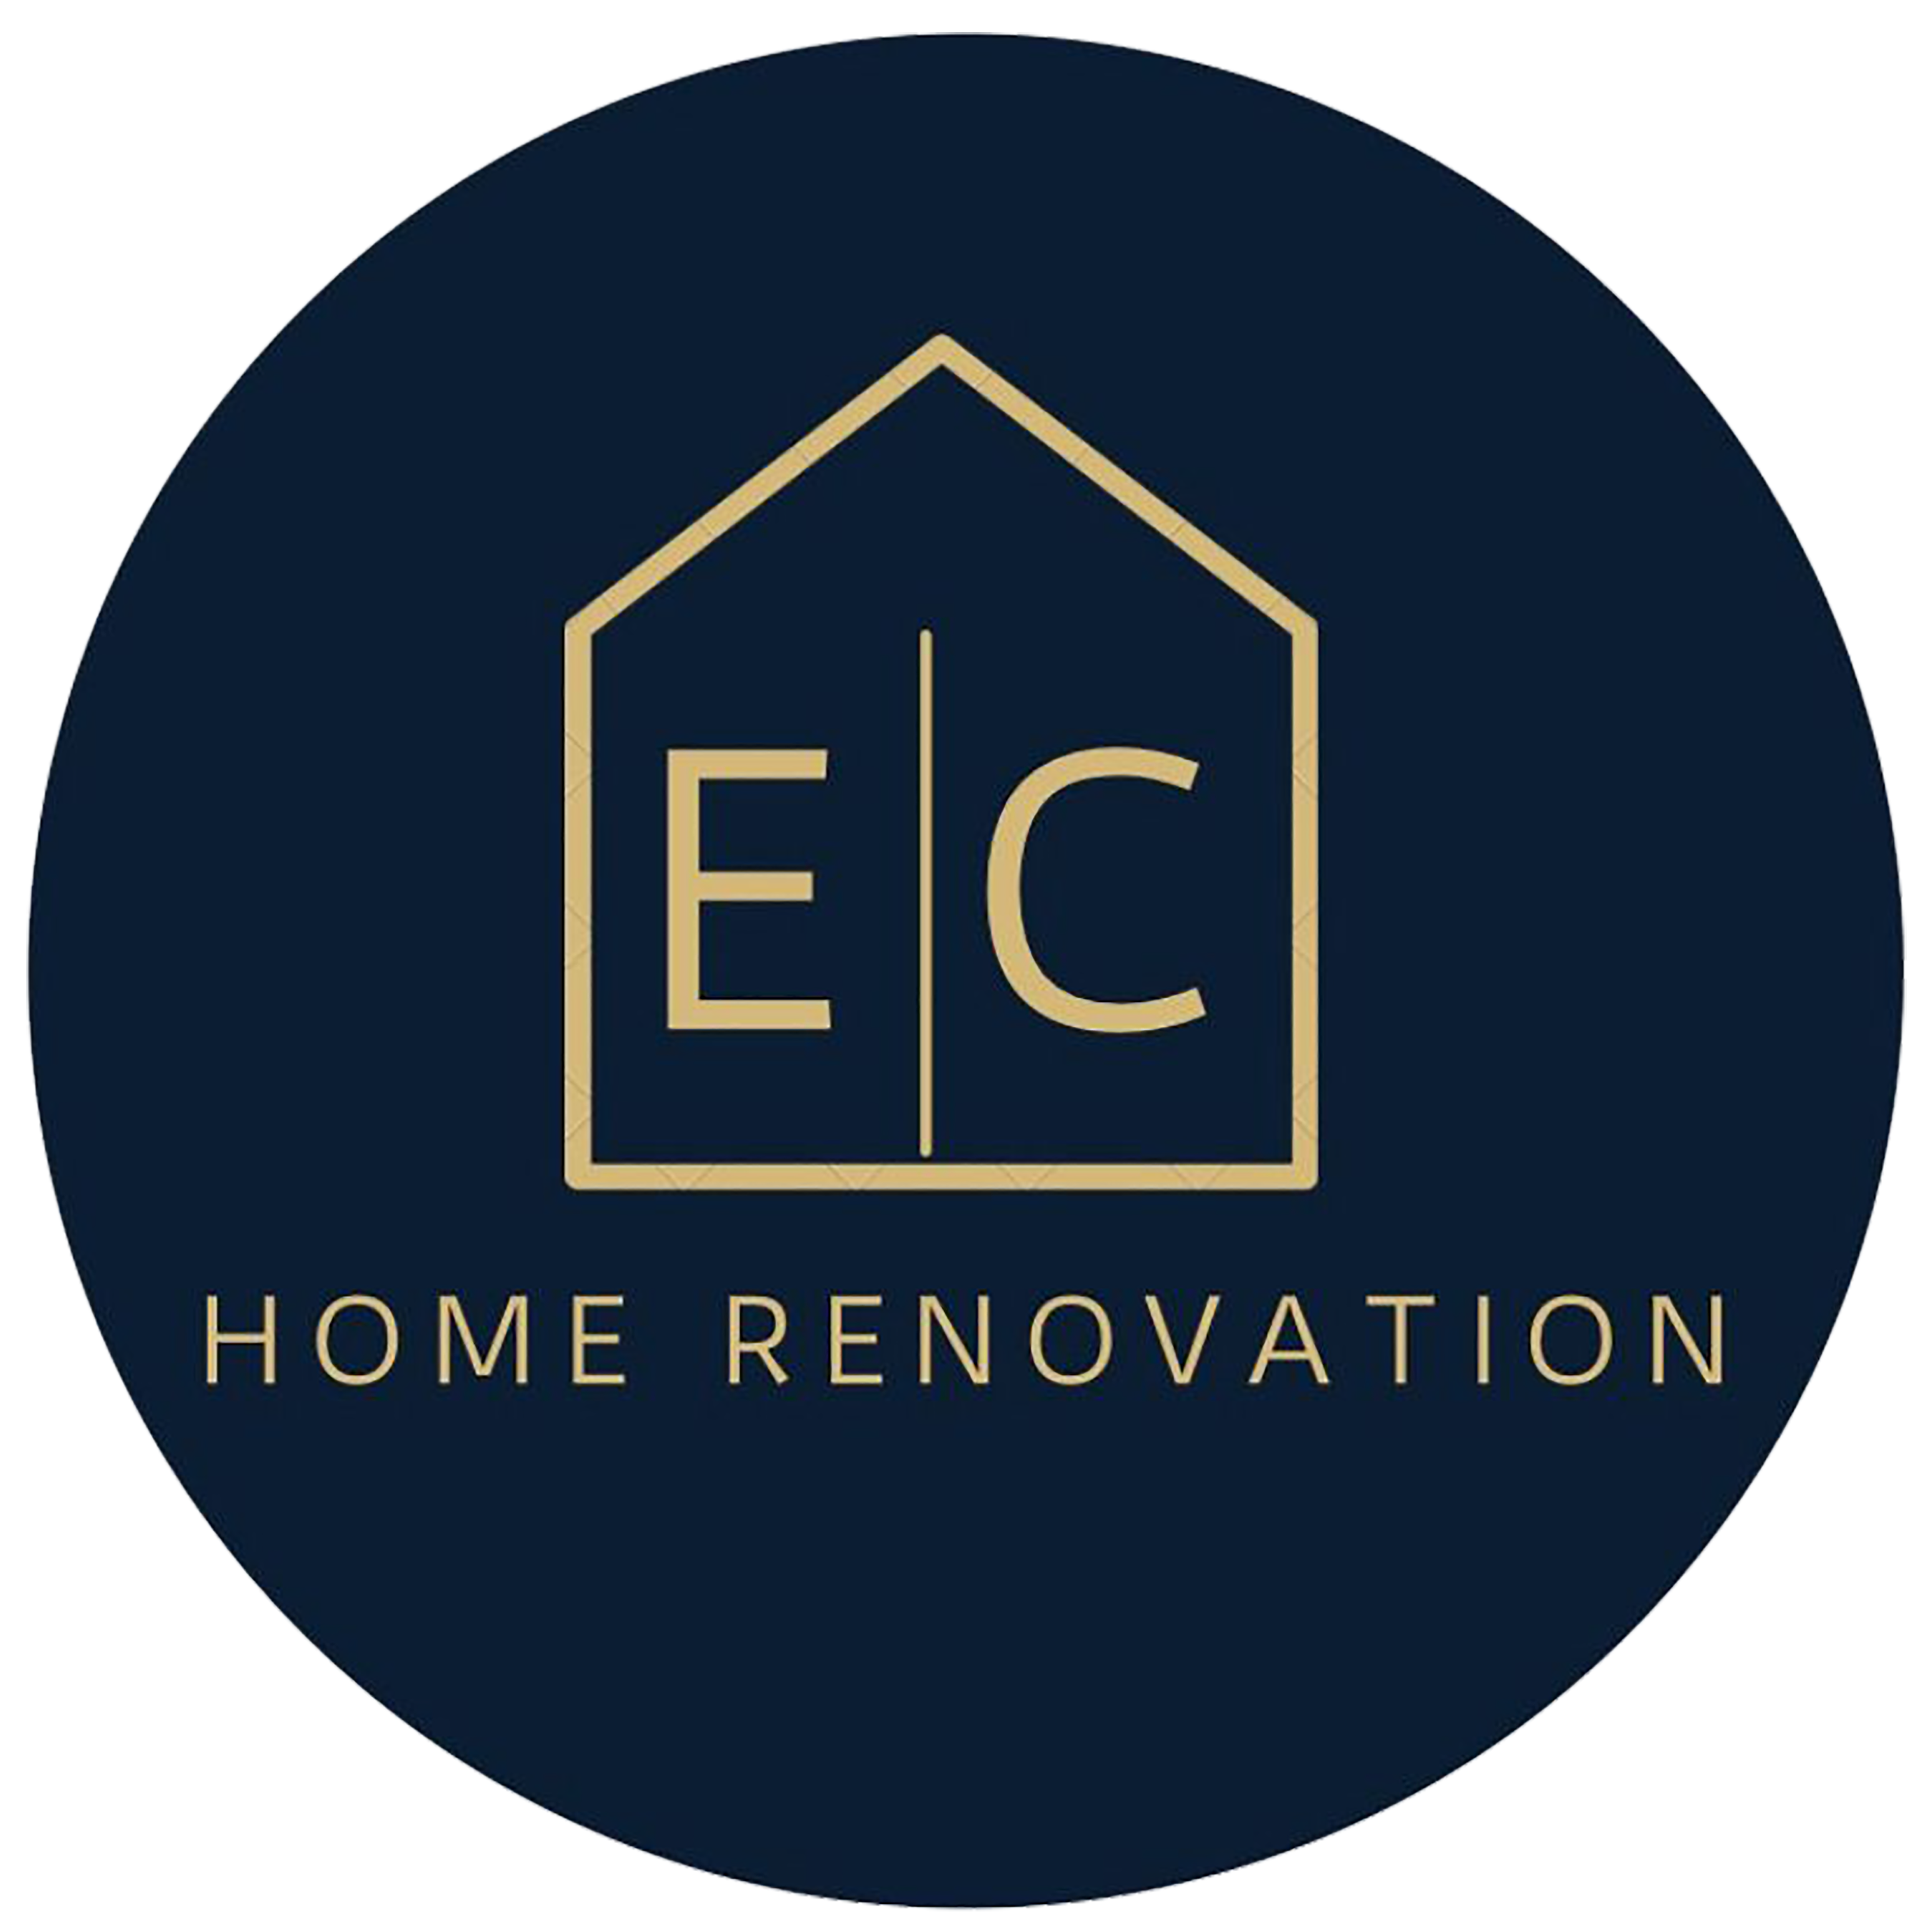 EC Home Renovation